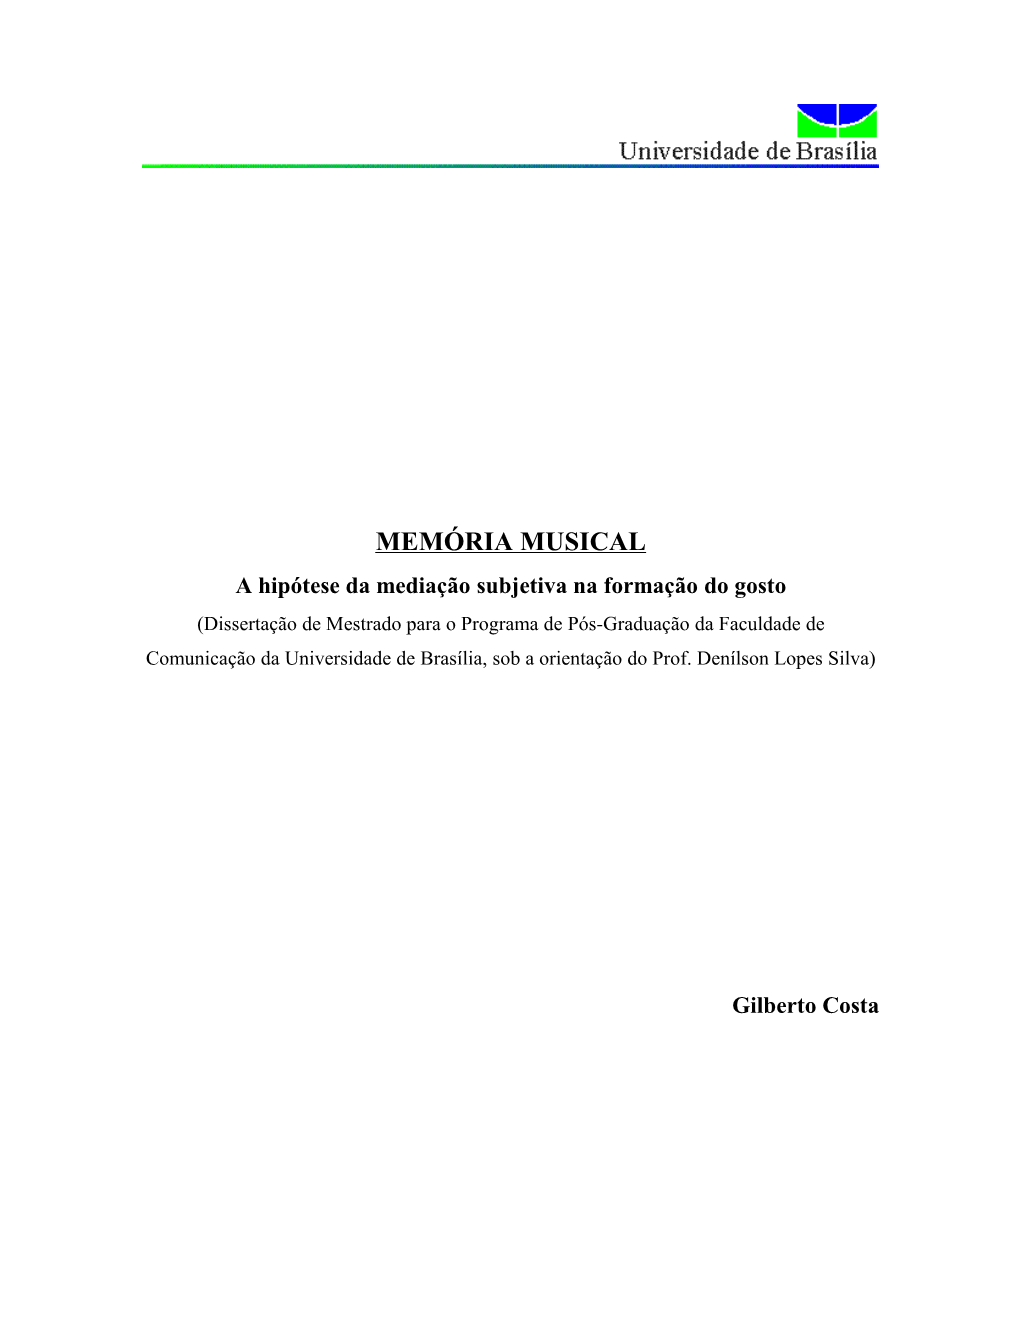 Memorial Da Música 26 Espaço Social Da MPB 41 Memória Musical 57 Mediação Subjetiva 89 Bibliografia 108 Anexos 115